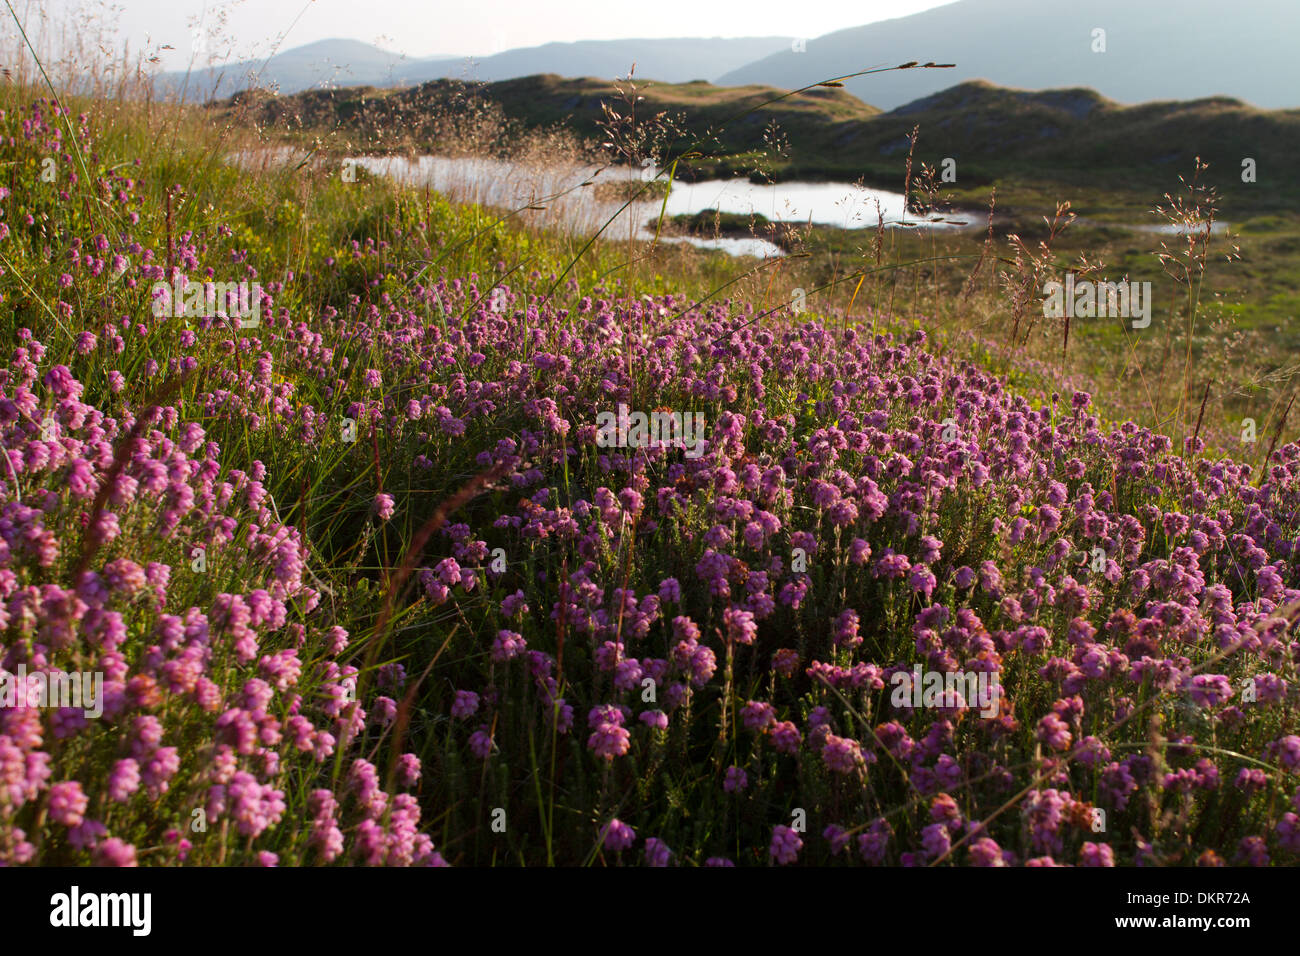 Contre-leaved Heath (Erica tetralix) floraison sur la lande dans les monts Cambriens. Ceredigion, pays de Galles. Juillet. Banque D'Images